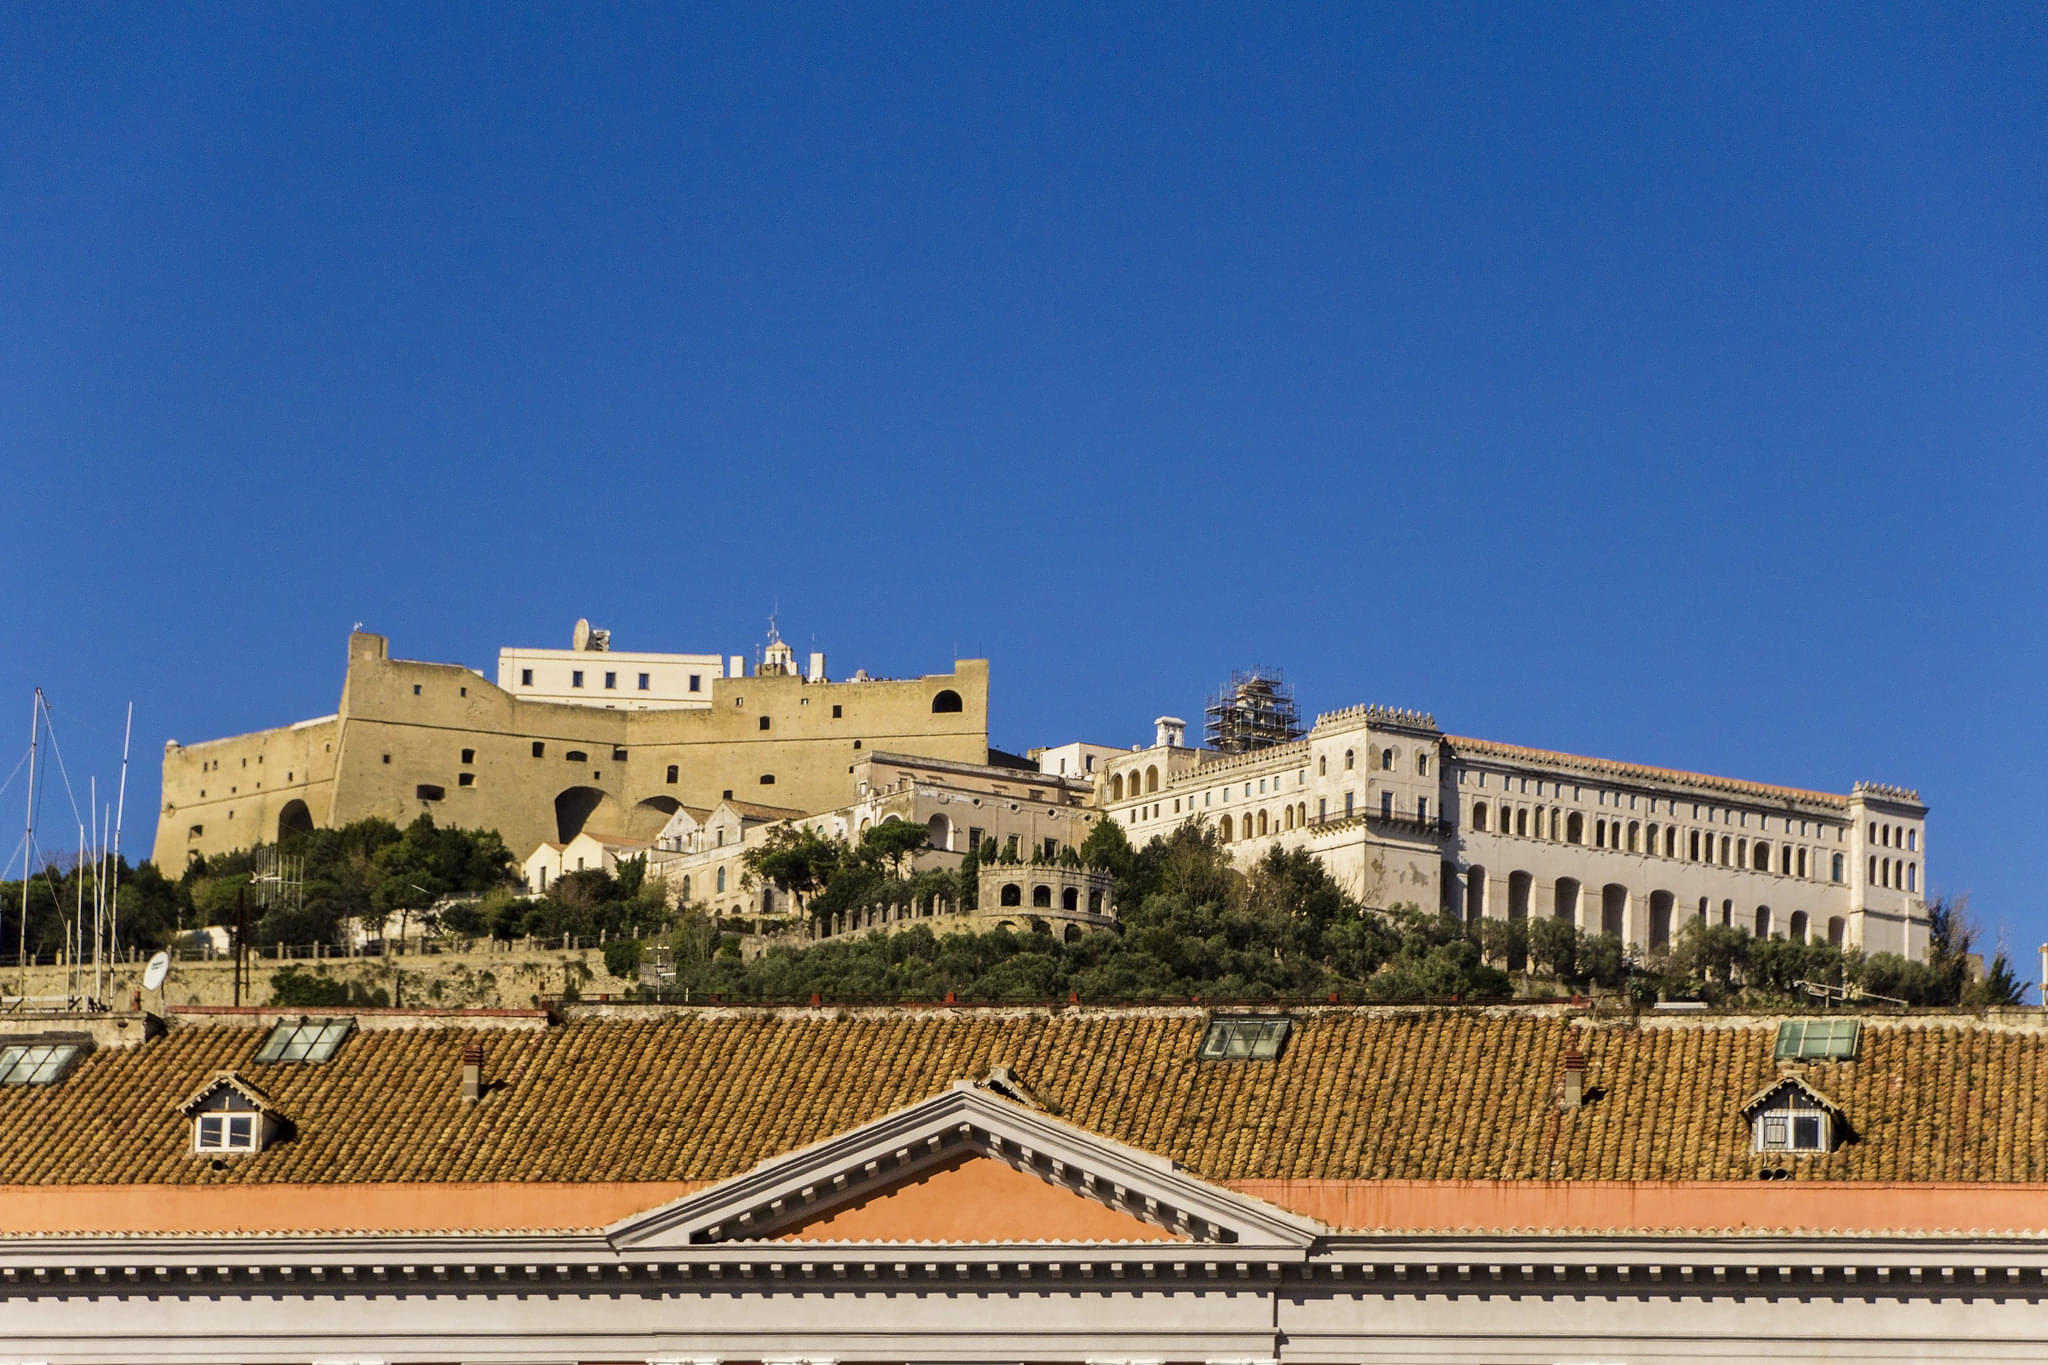 Castel Sant’Elmo Overview